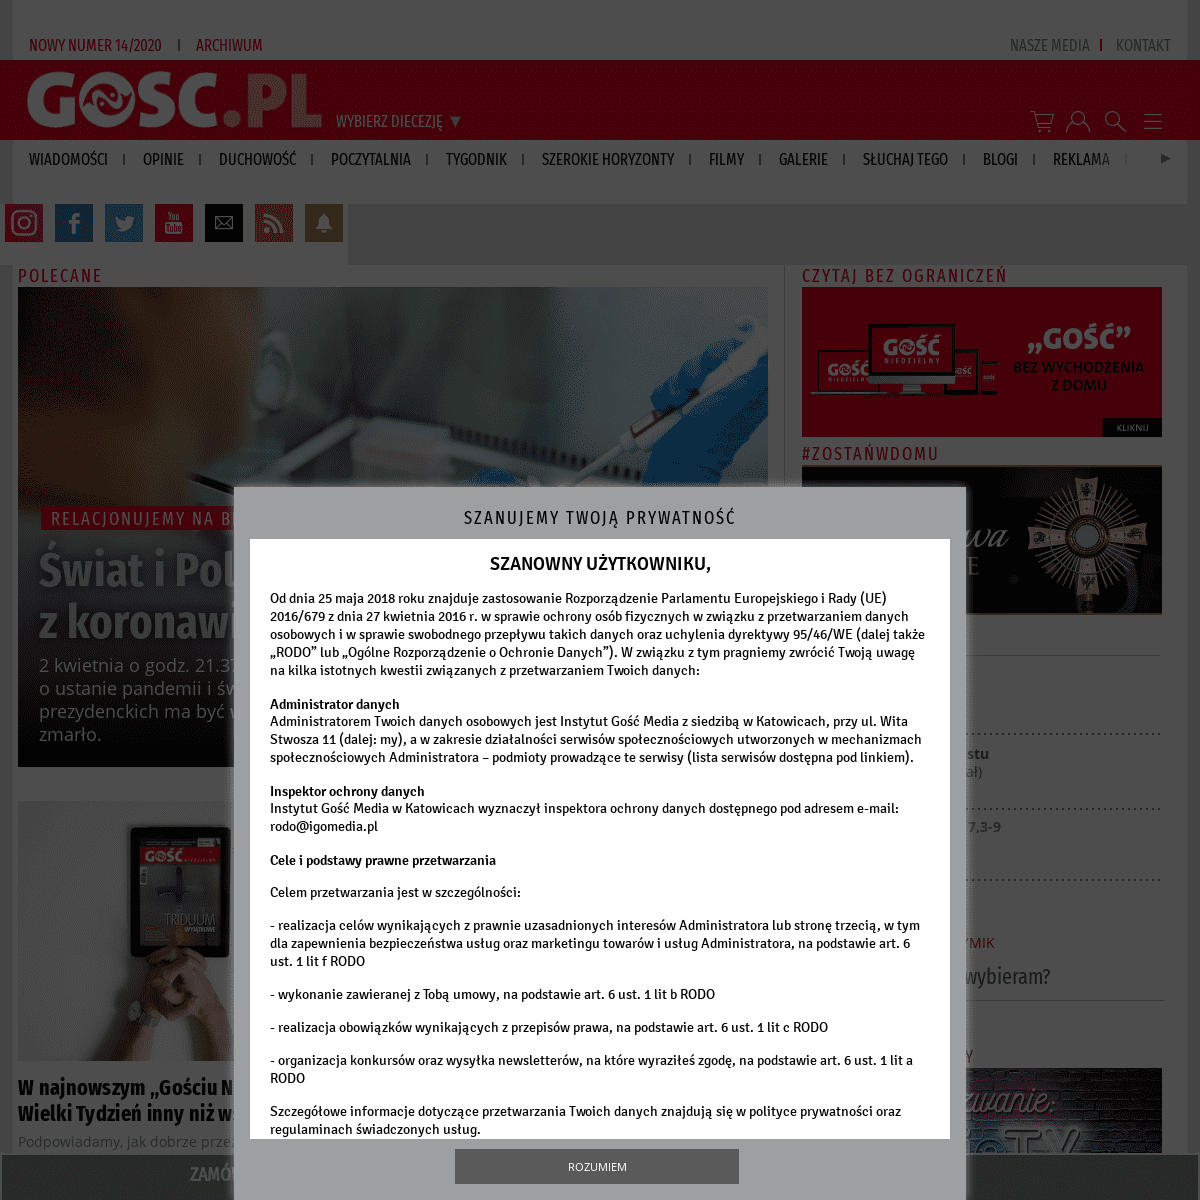 A complete backup of gosc.pl